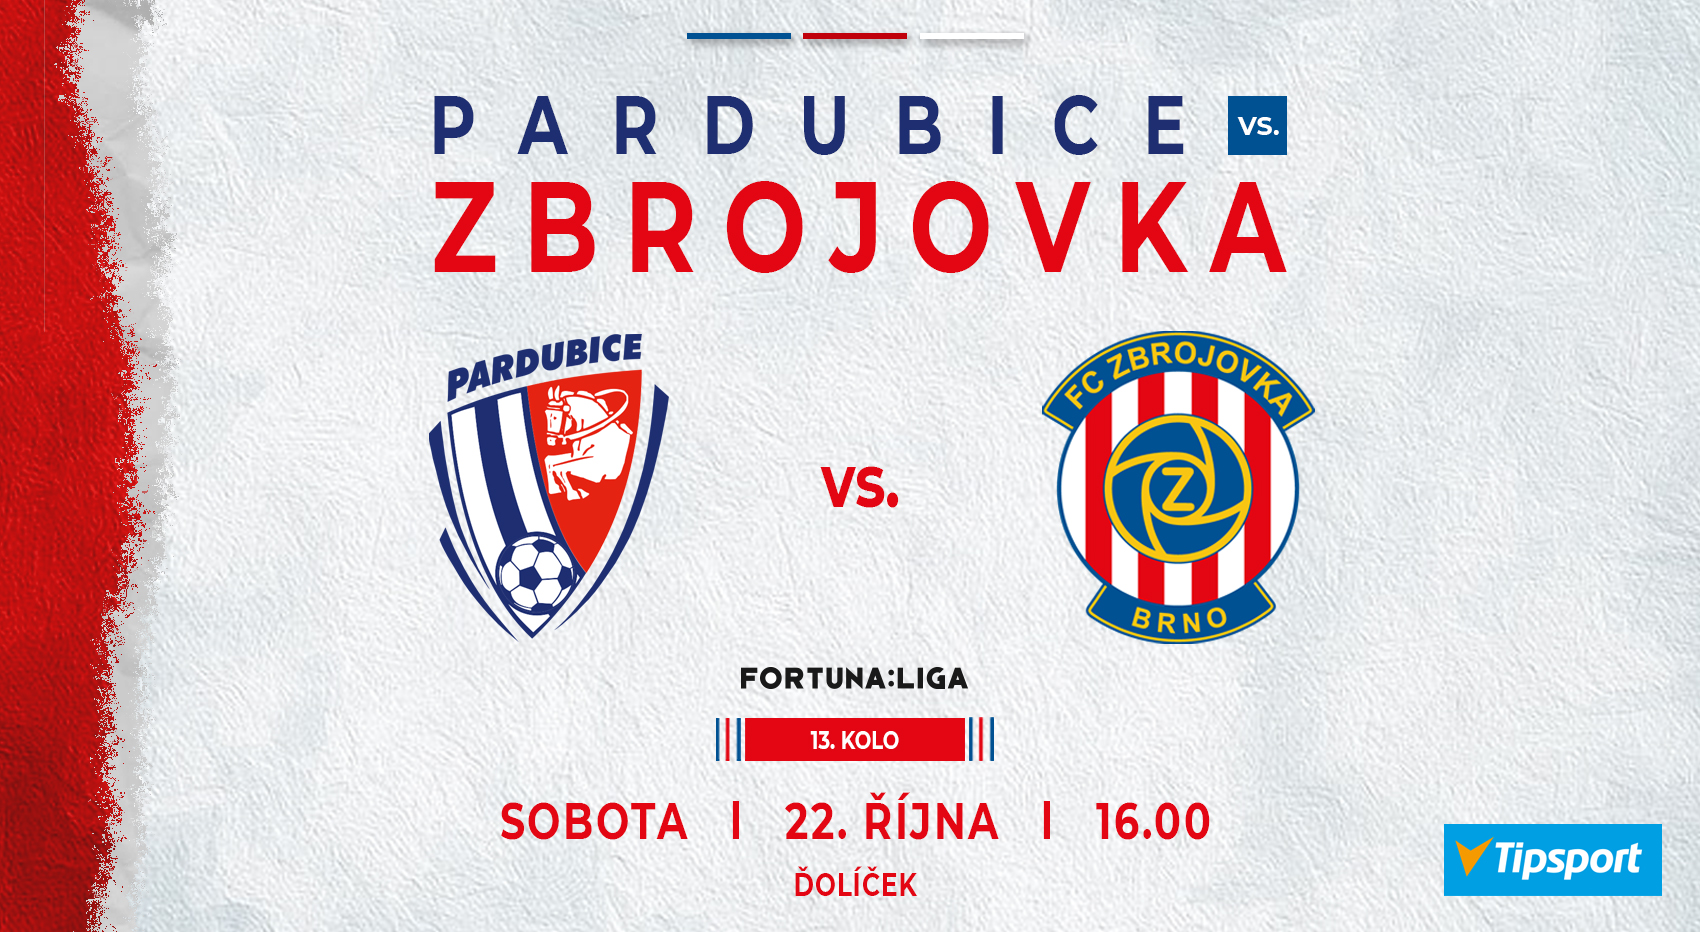 PREVIEW: Dalším soupeřem jsou Pardubice!